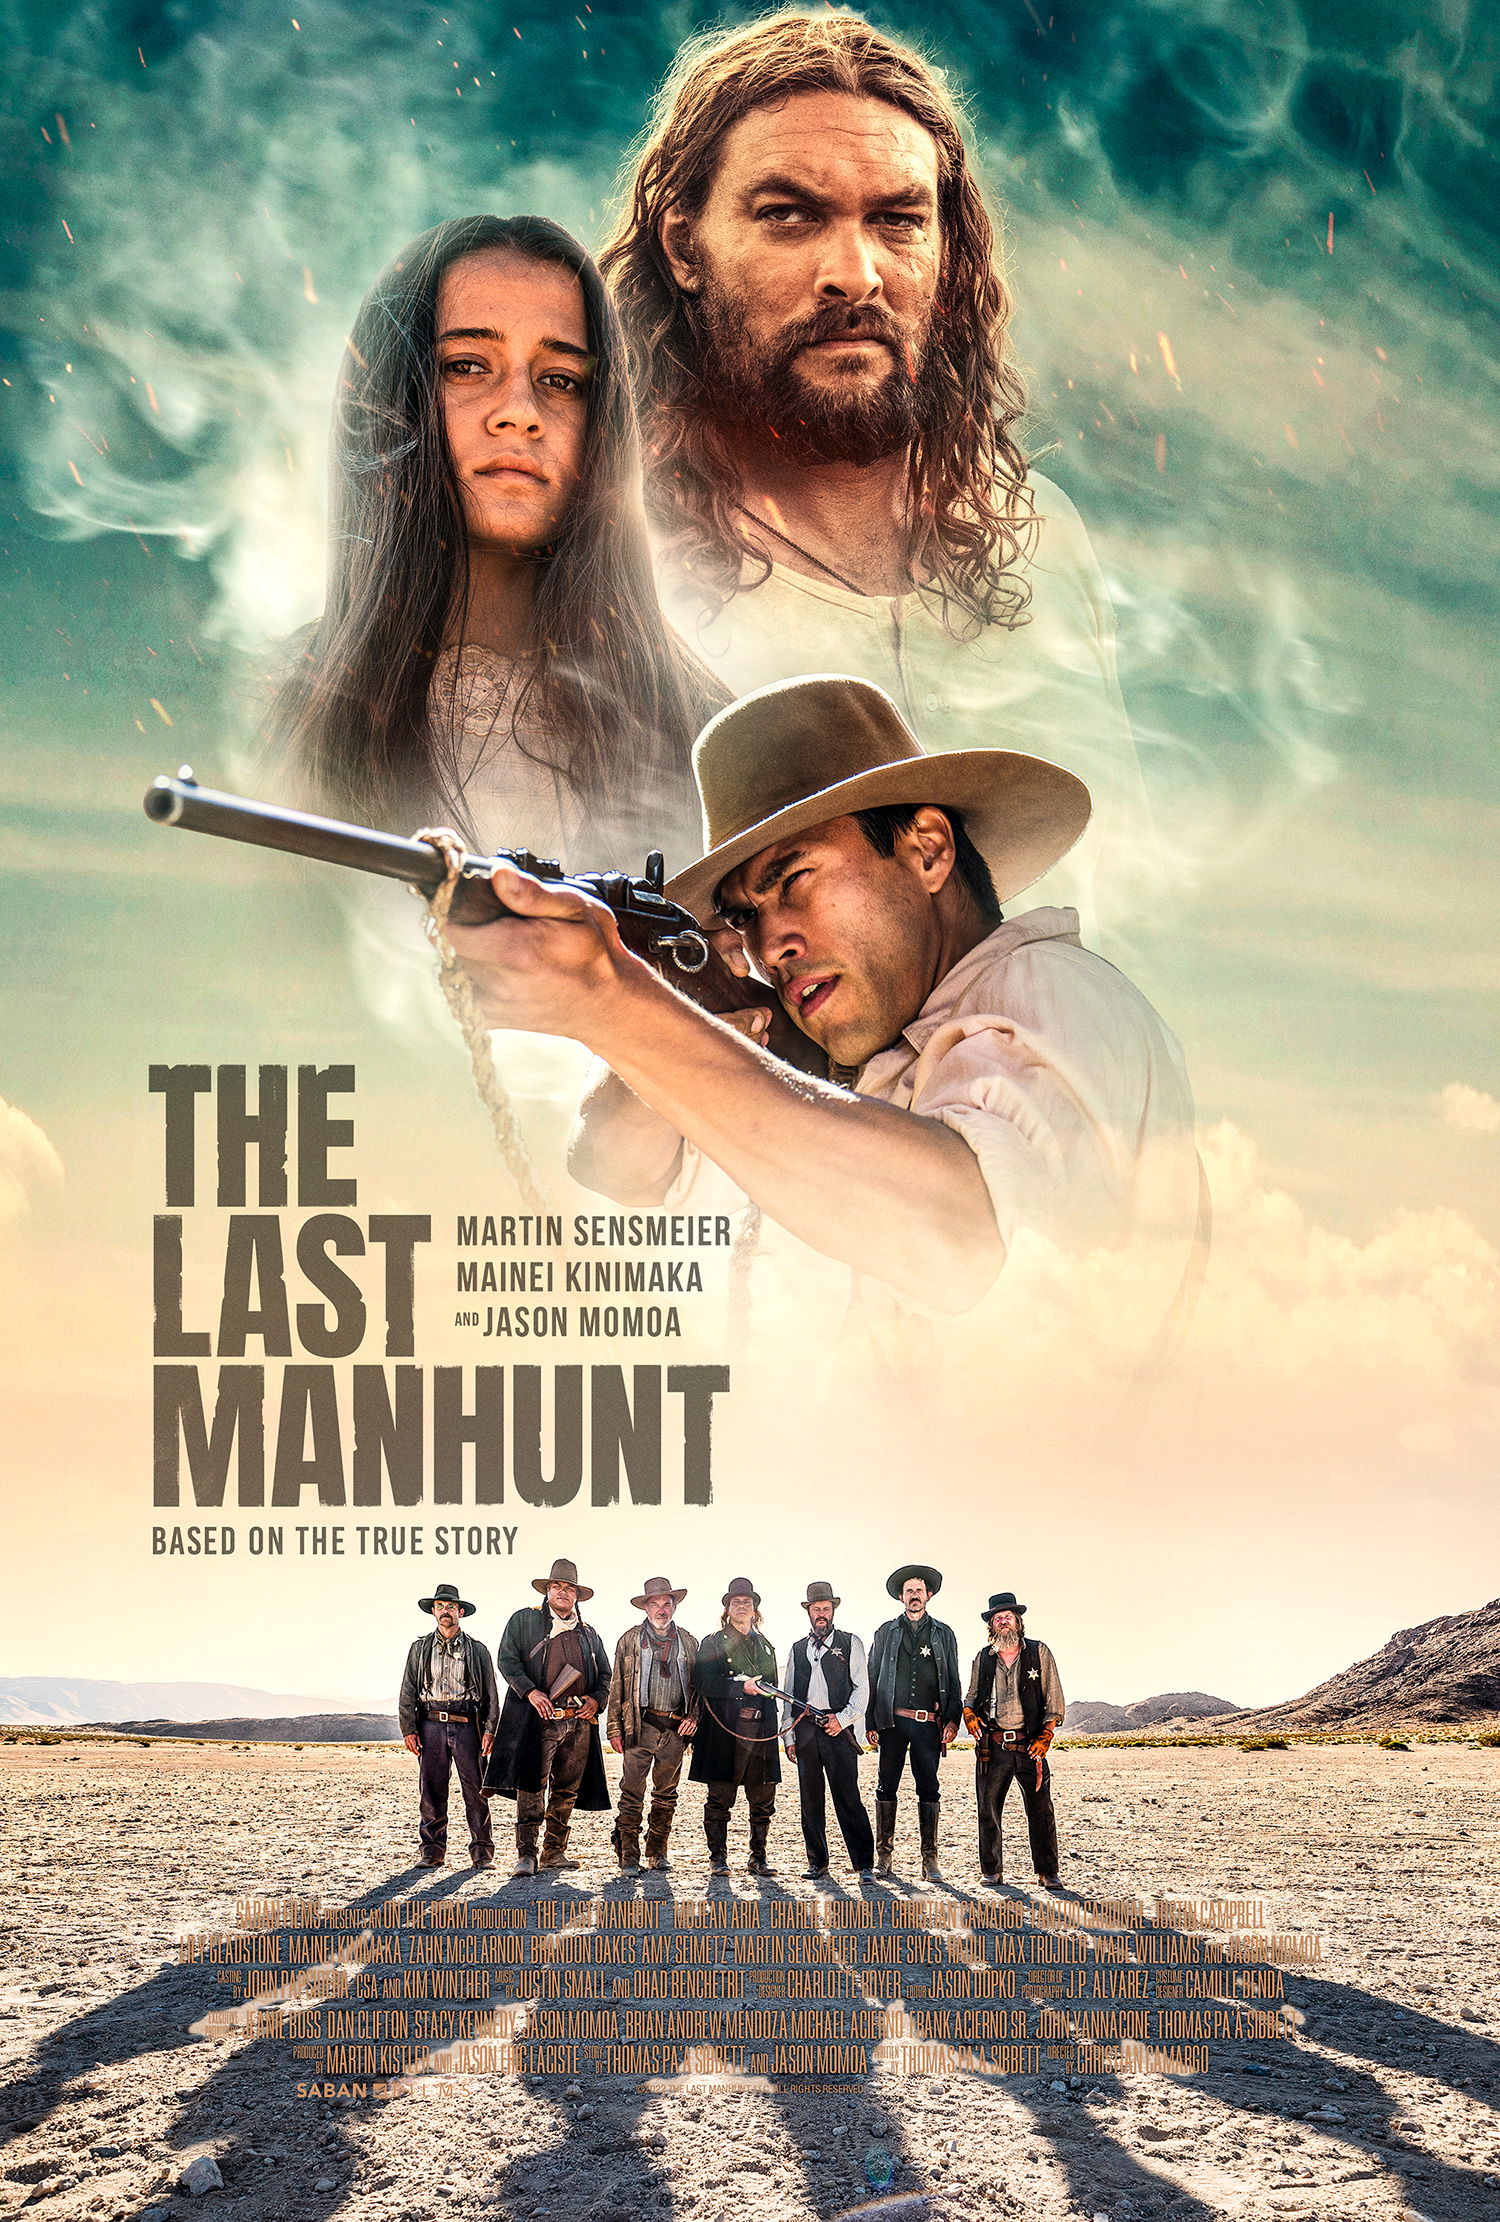 Nonton film The Last Manhunt layarkaca21 indoxx1 ganool online streaming terbaru